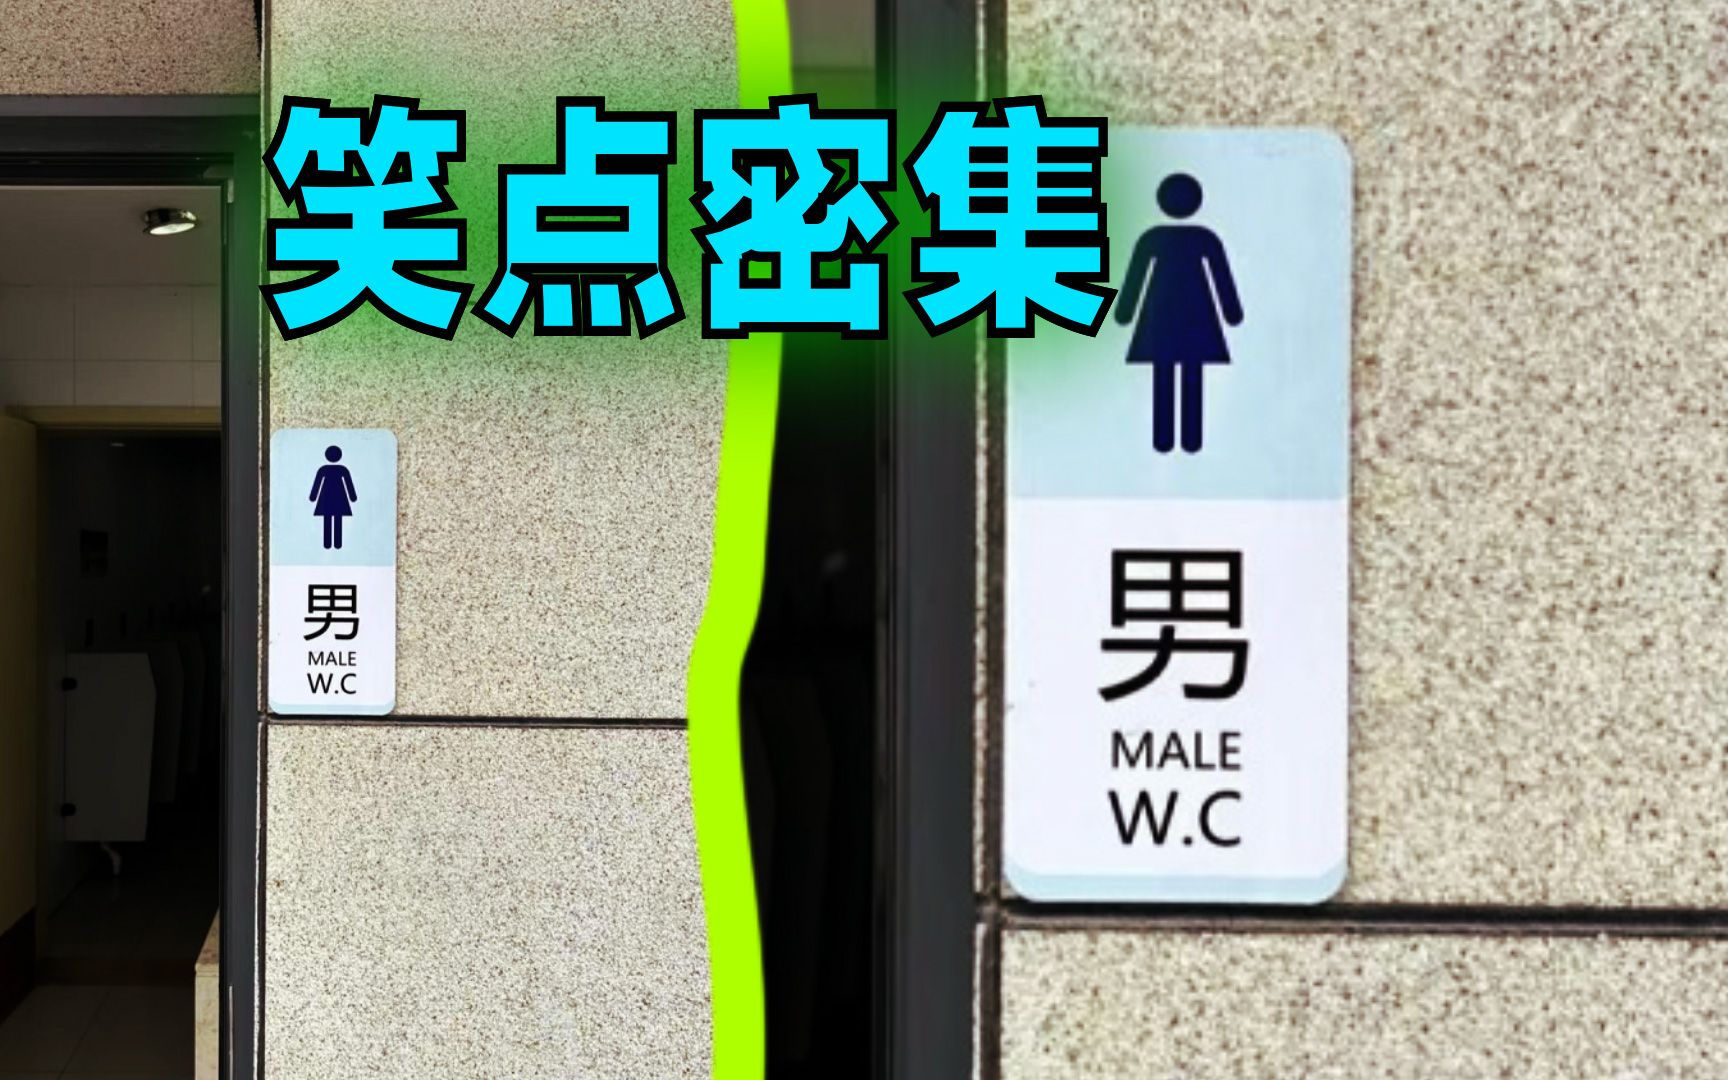 搞笑：跟厕所有关的奇葩事，女厕所标语征集~ - 知乎